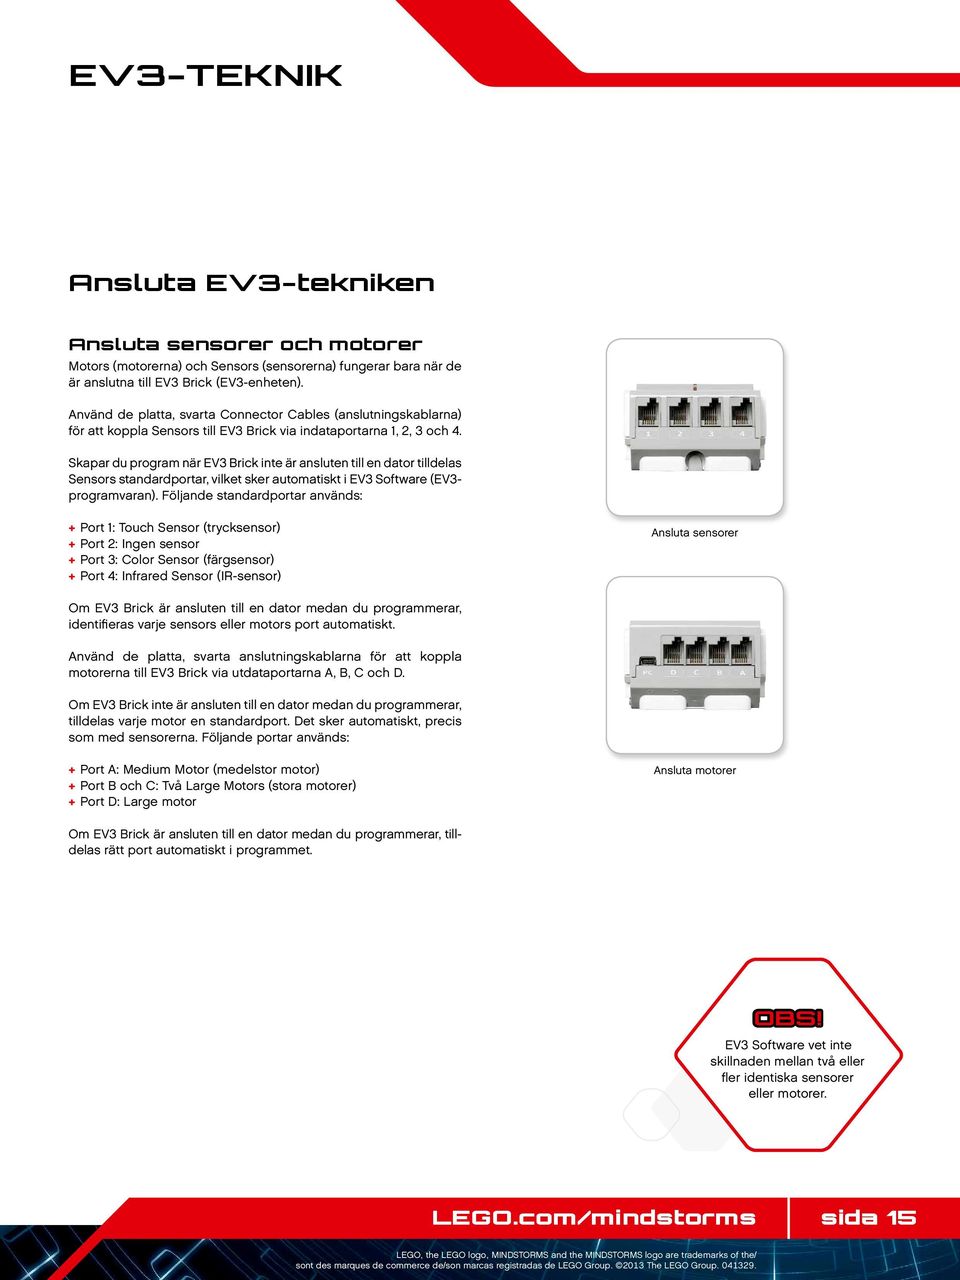 Skapar du program när EV3 Brick inte är ansluten till en dator tilldelas Sensors standardportar, vilket sker automatiskt i EV3 Software (EV3- programvaran).